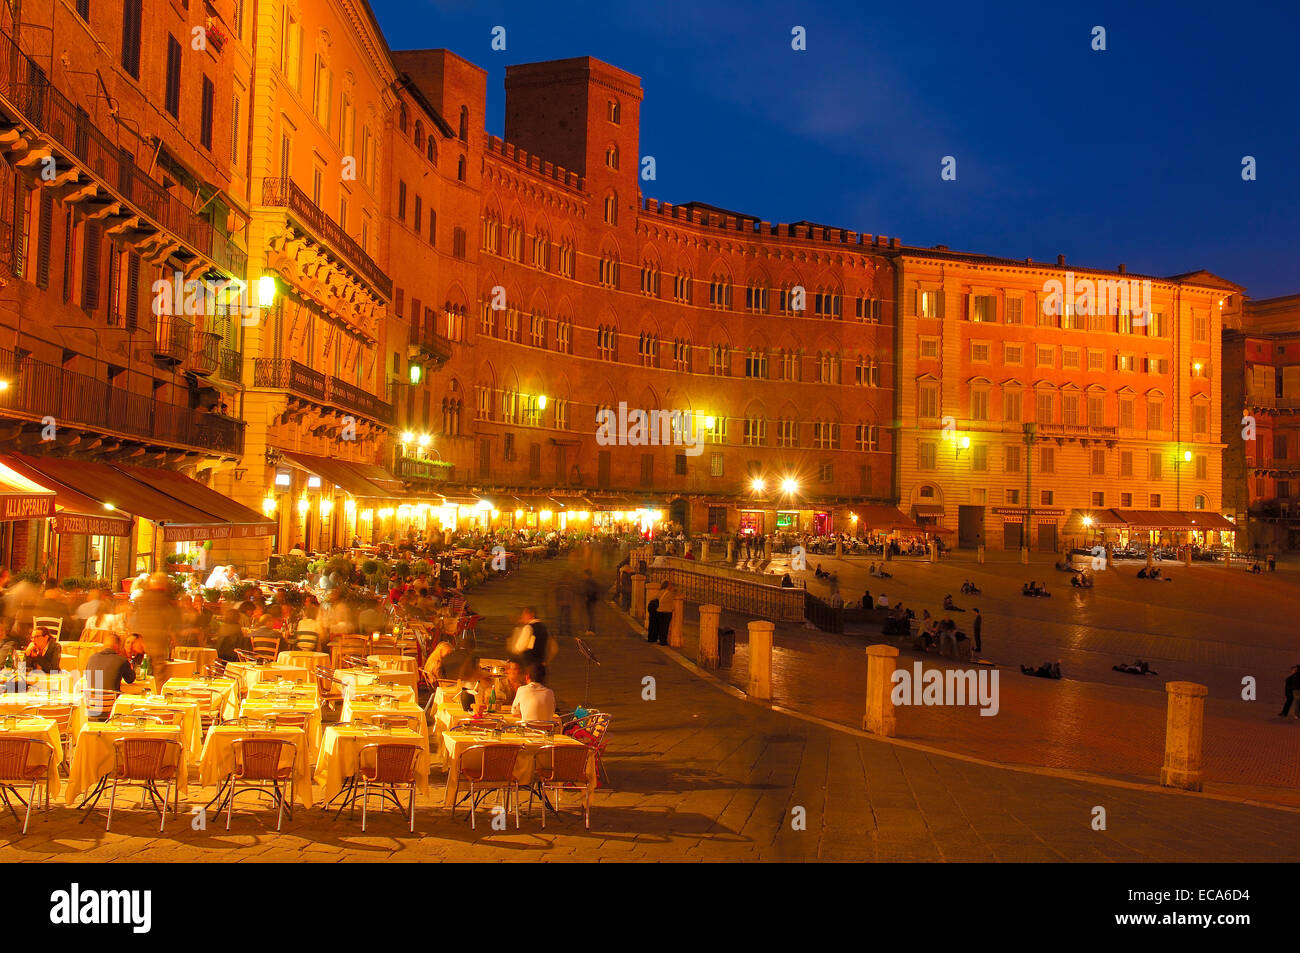 Piazza del campo square at dusk, Siena, Tuscany, Italy, Europe Stock Photo